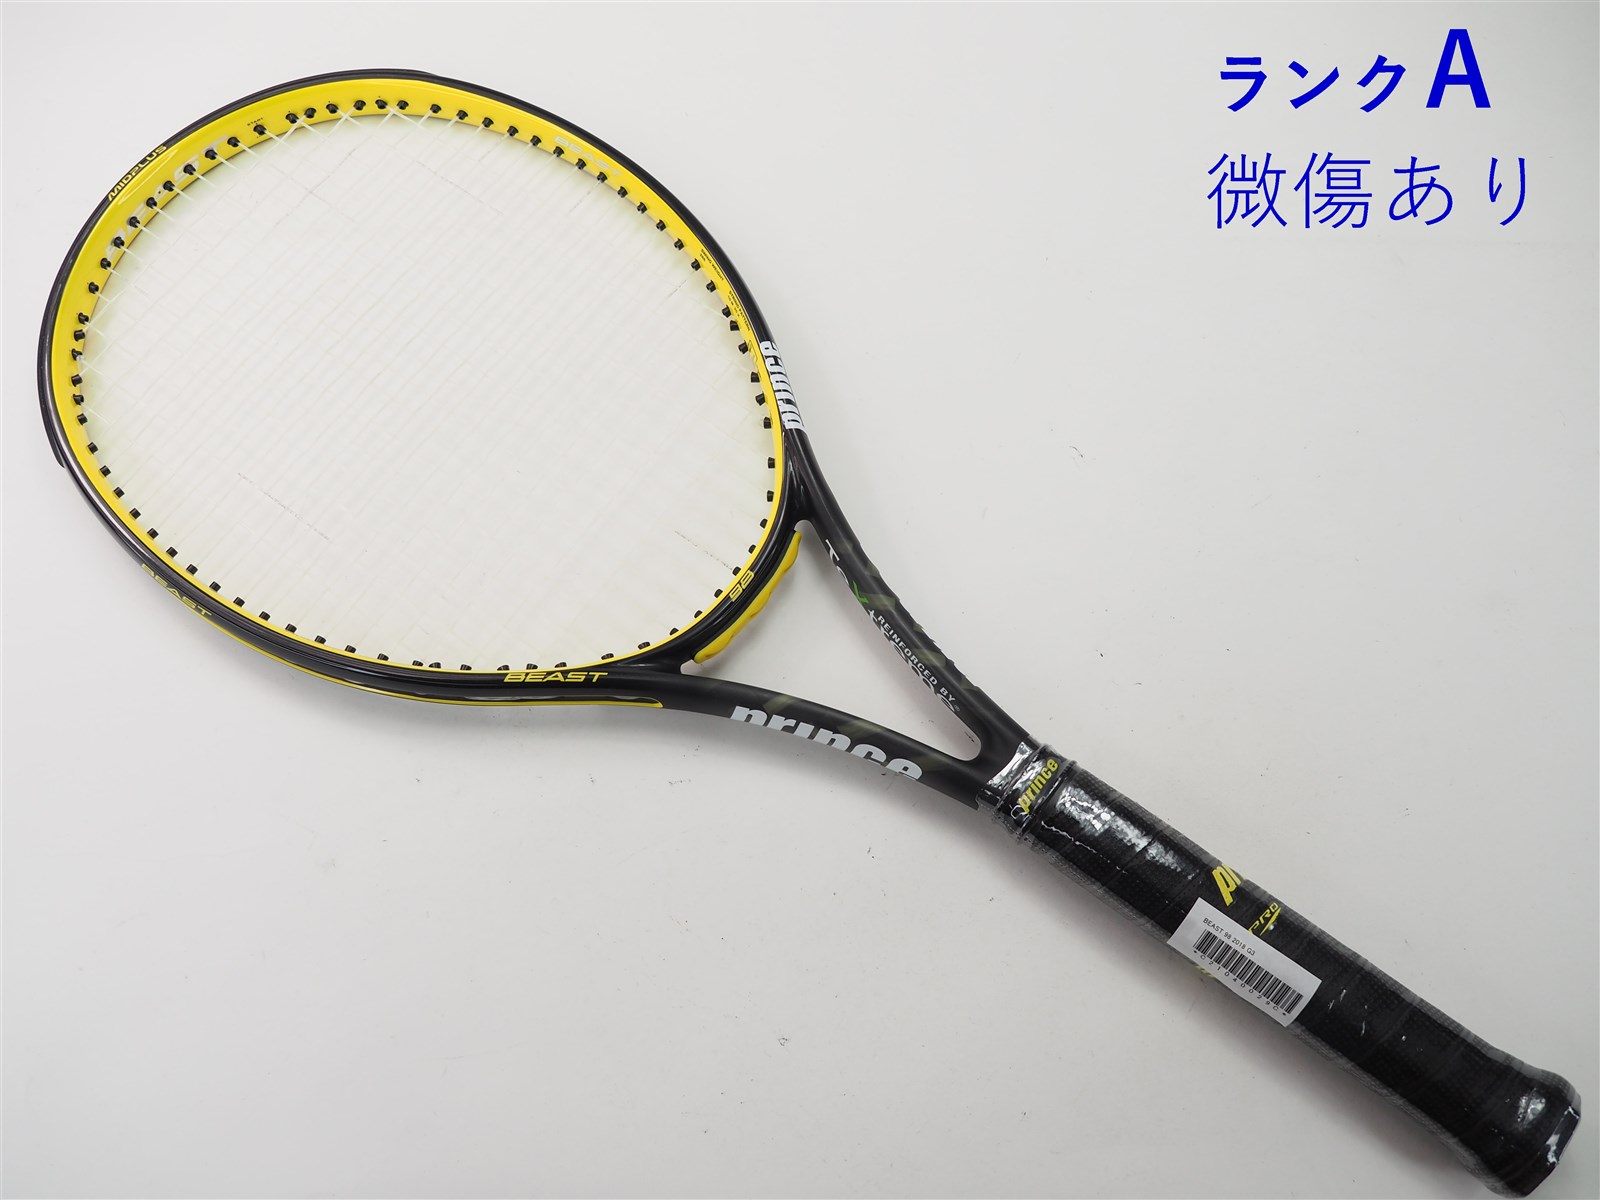 テニスラケット プリンス ビースト 98 2018年モデル【一部グロメット割れ有り】 (G2)PRINCE BEAST 98 2018元グリップ交換済み付属品